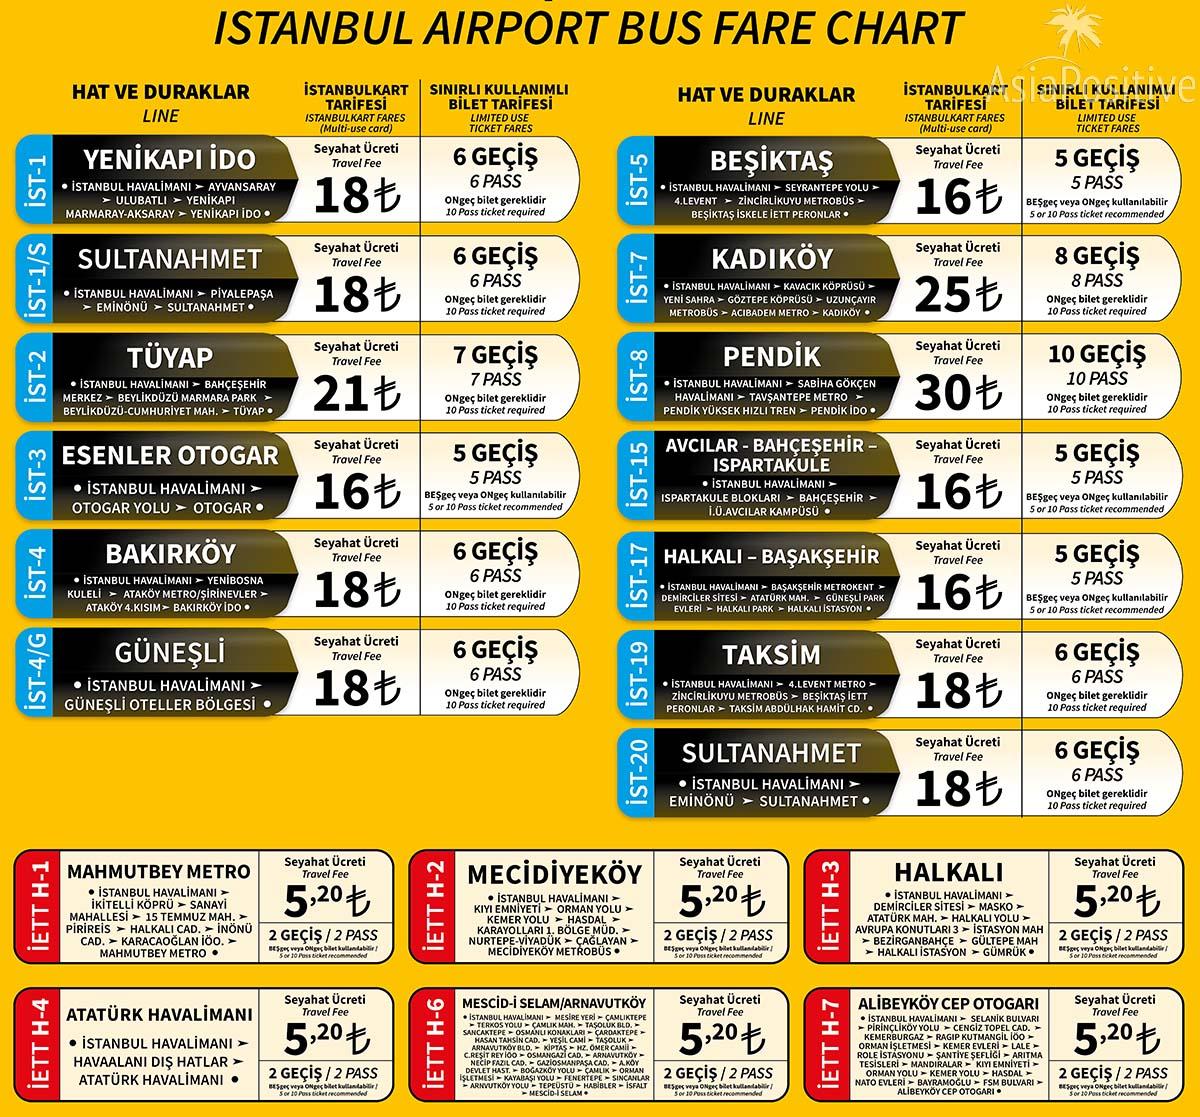 Маршруты автобусов из или в Новый Аэропорт Стамбула со стоимостью проезда 